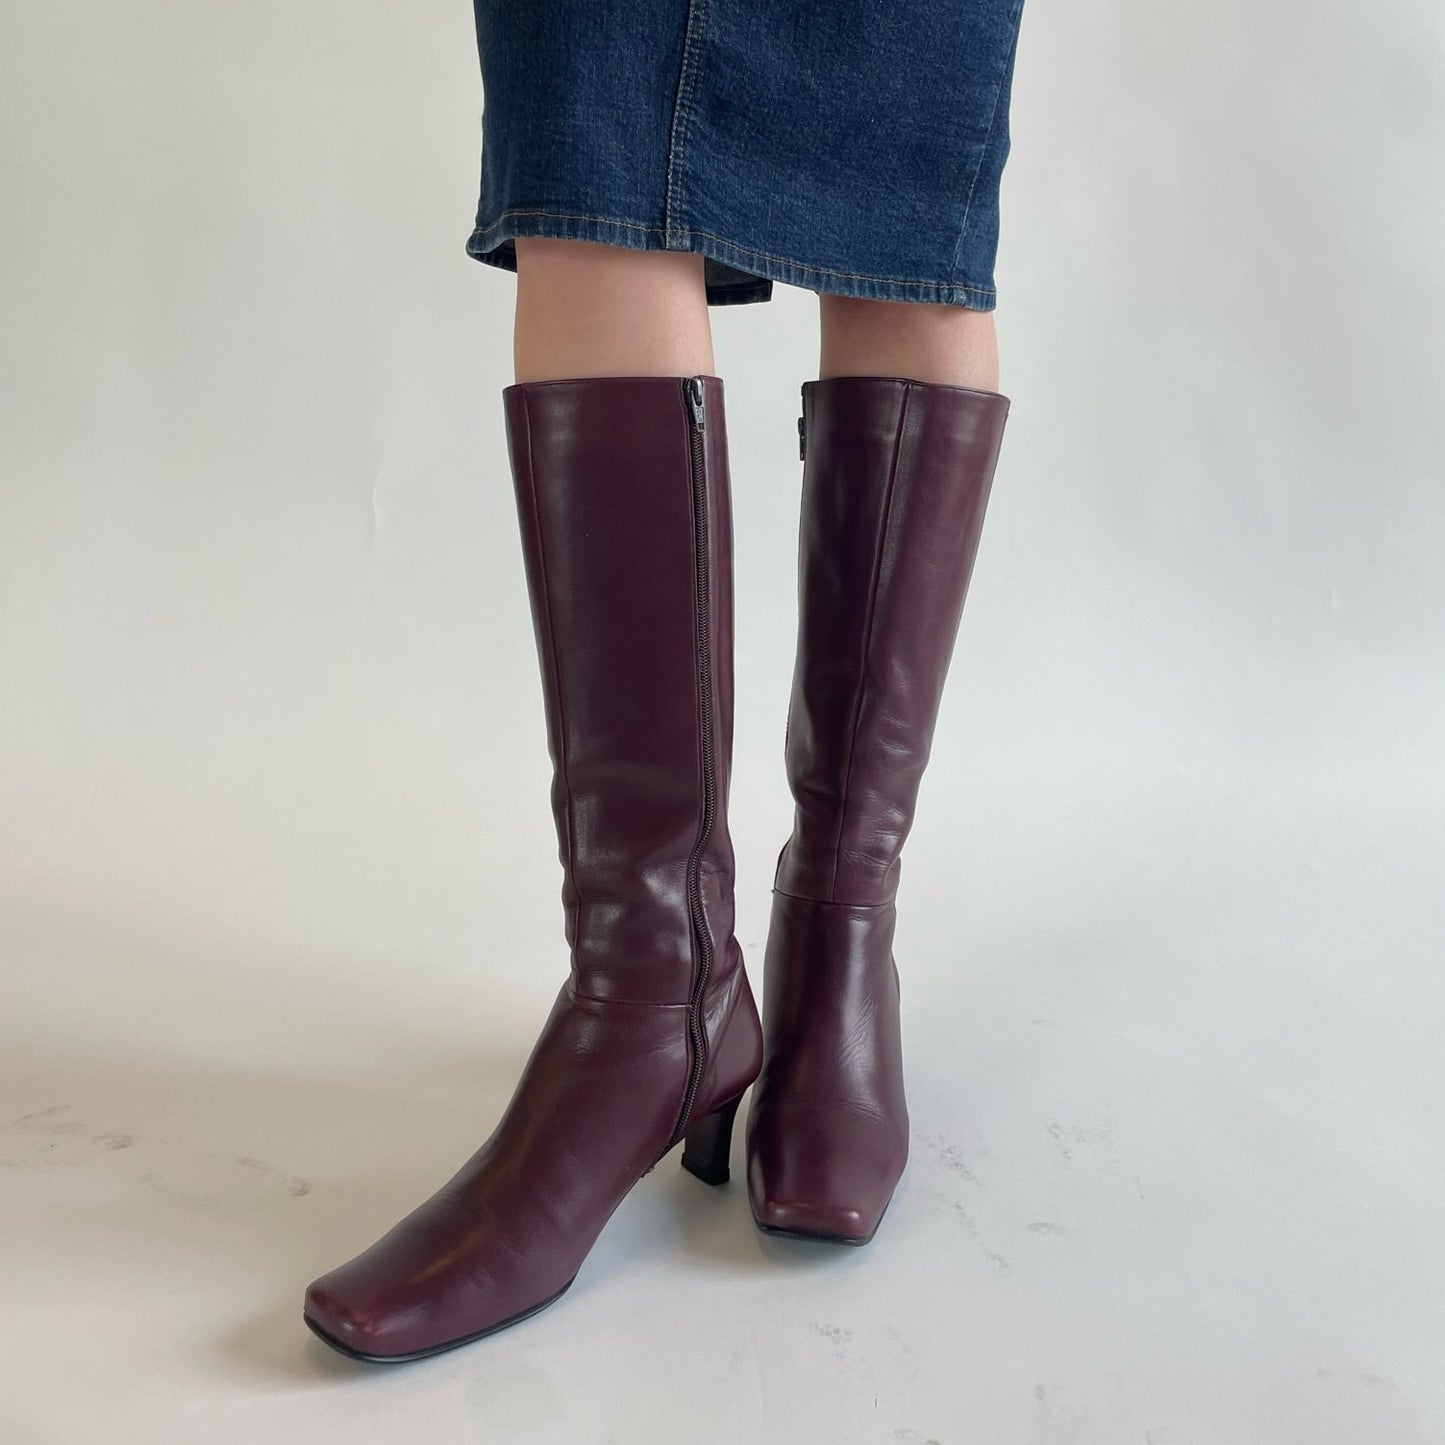 maroon boots